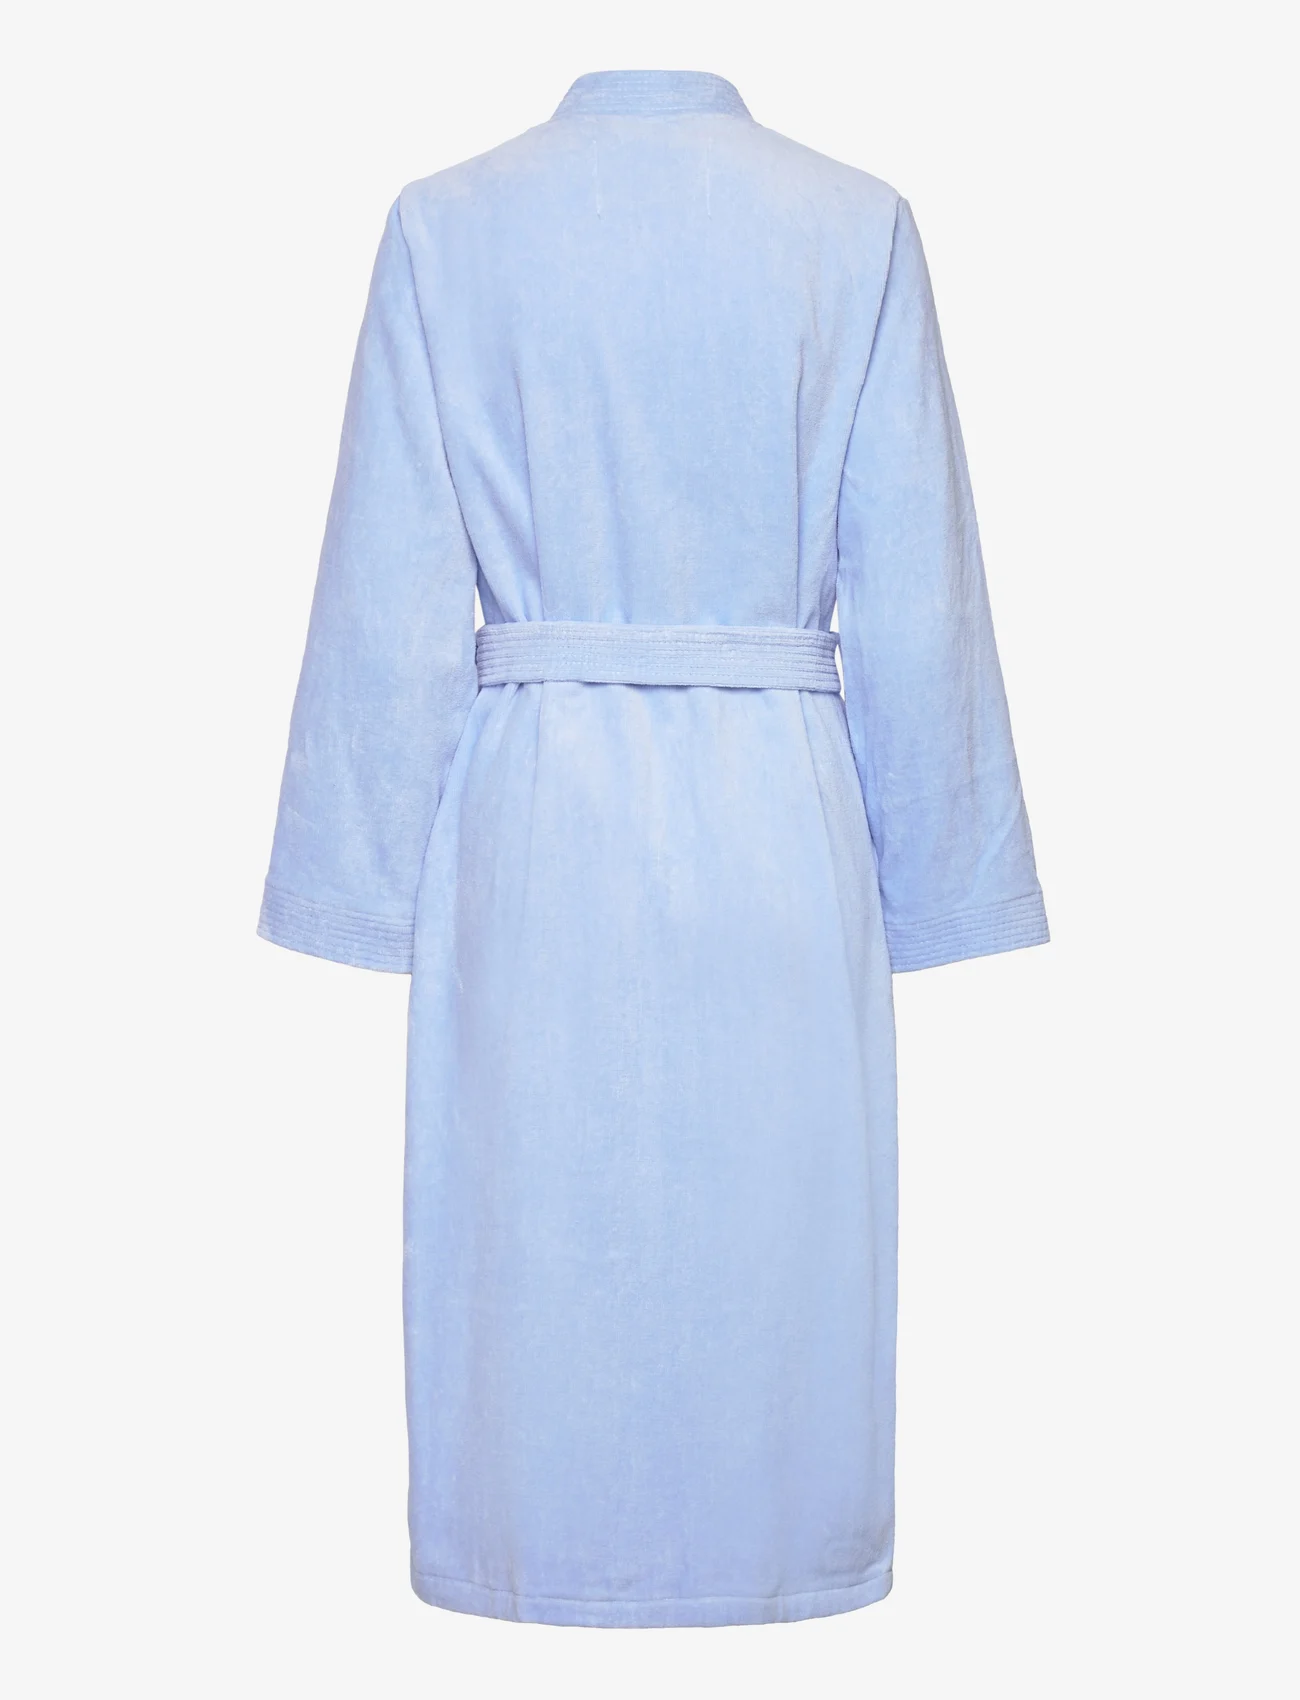 Rosemunde - Organic robe - kylpytakit - serenity blue - 1